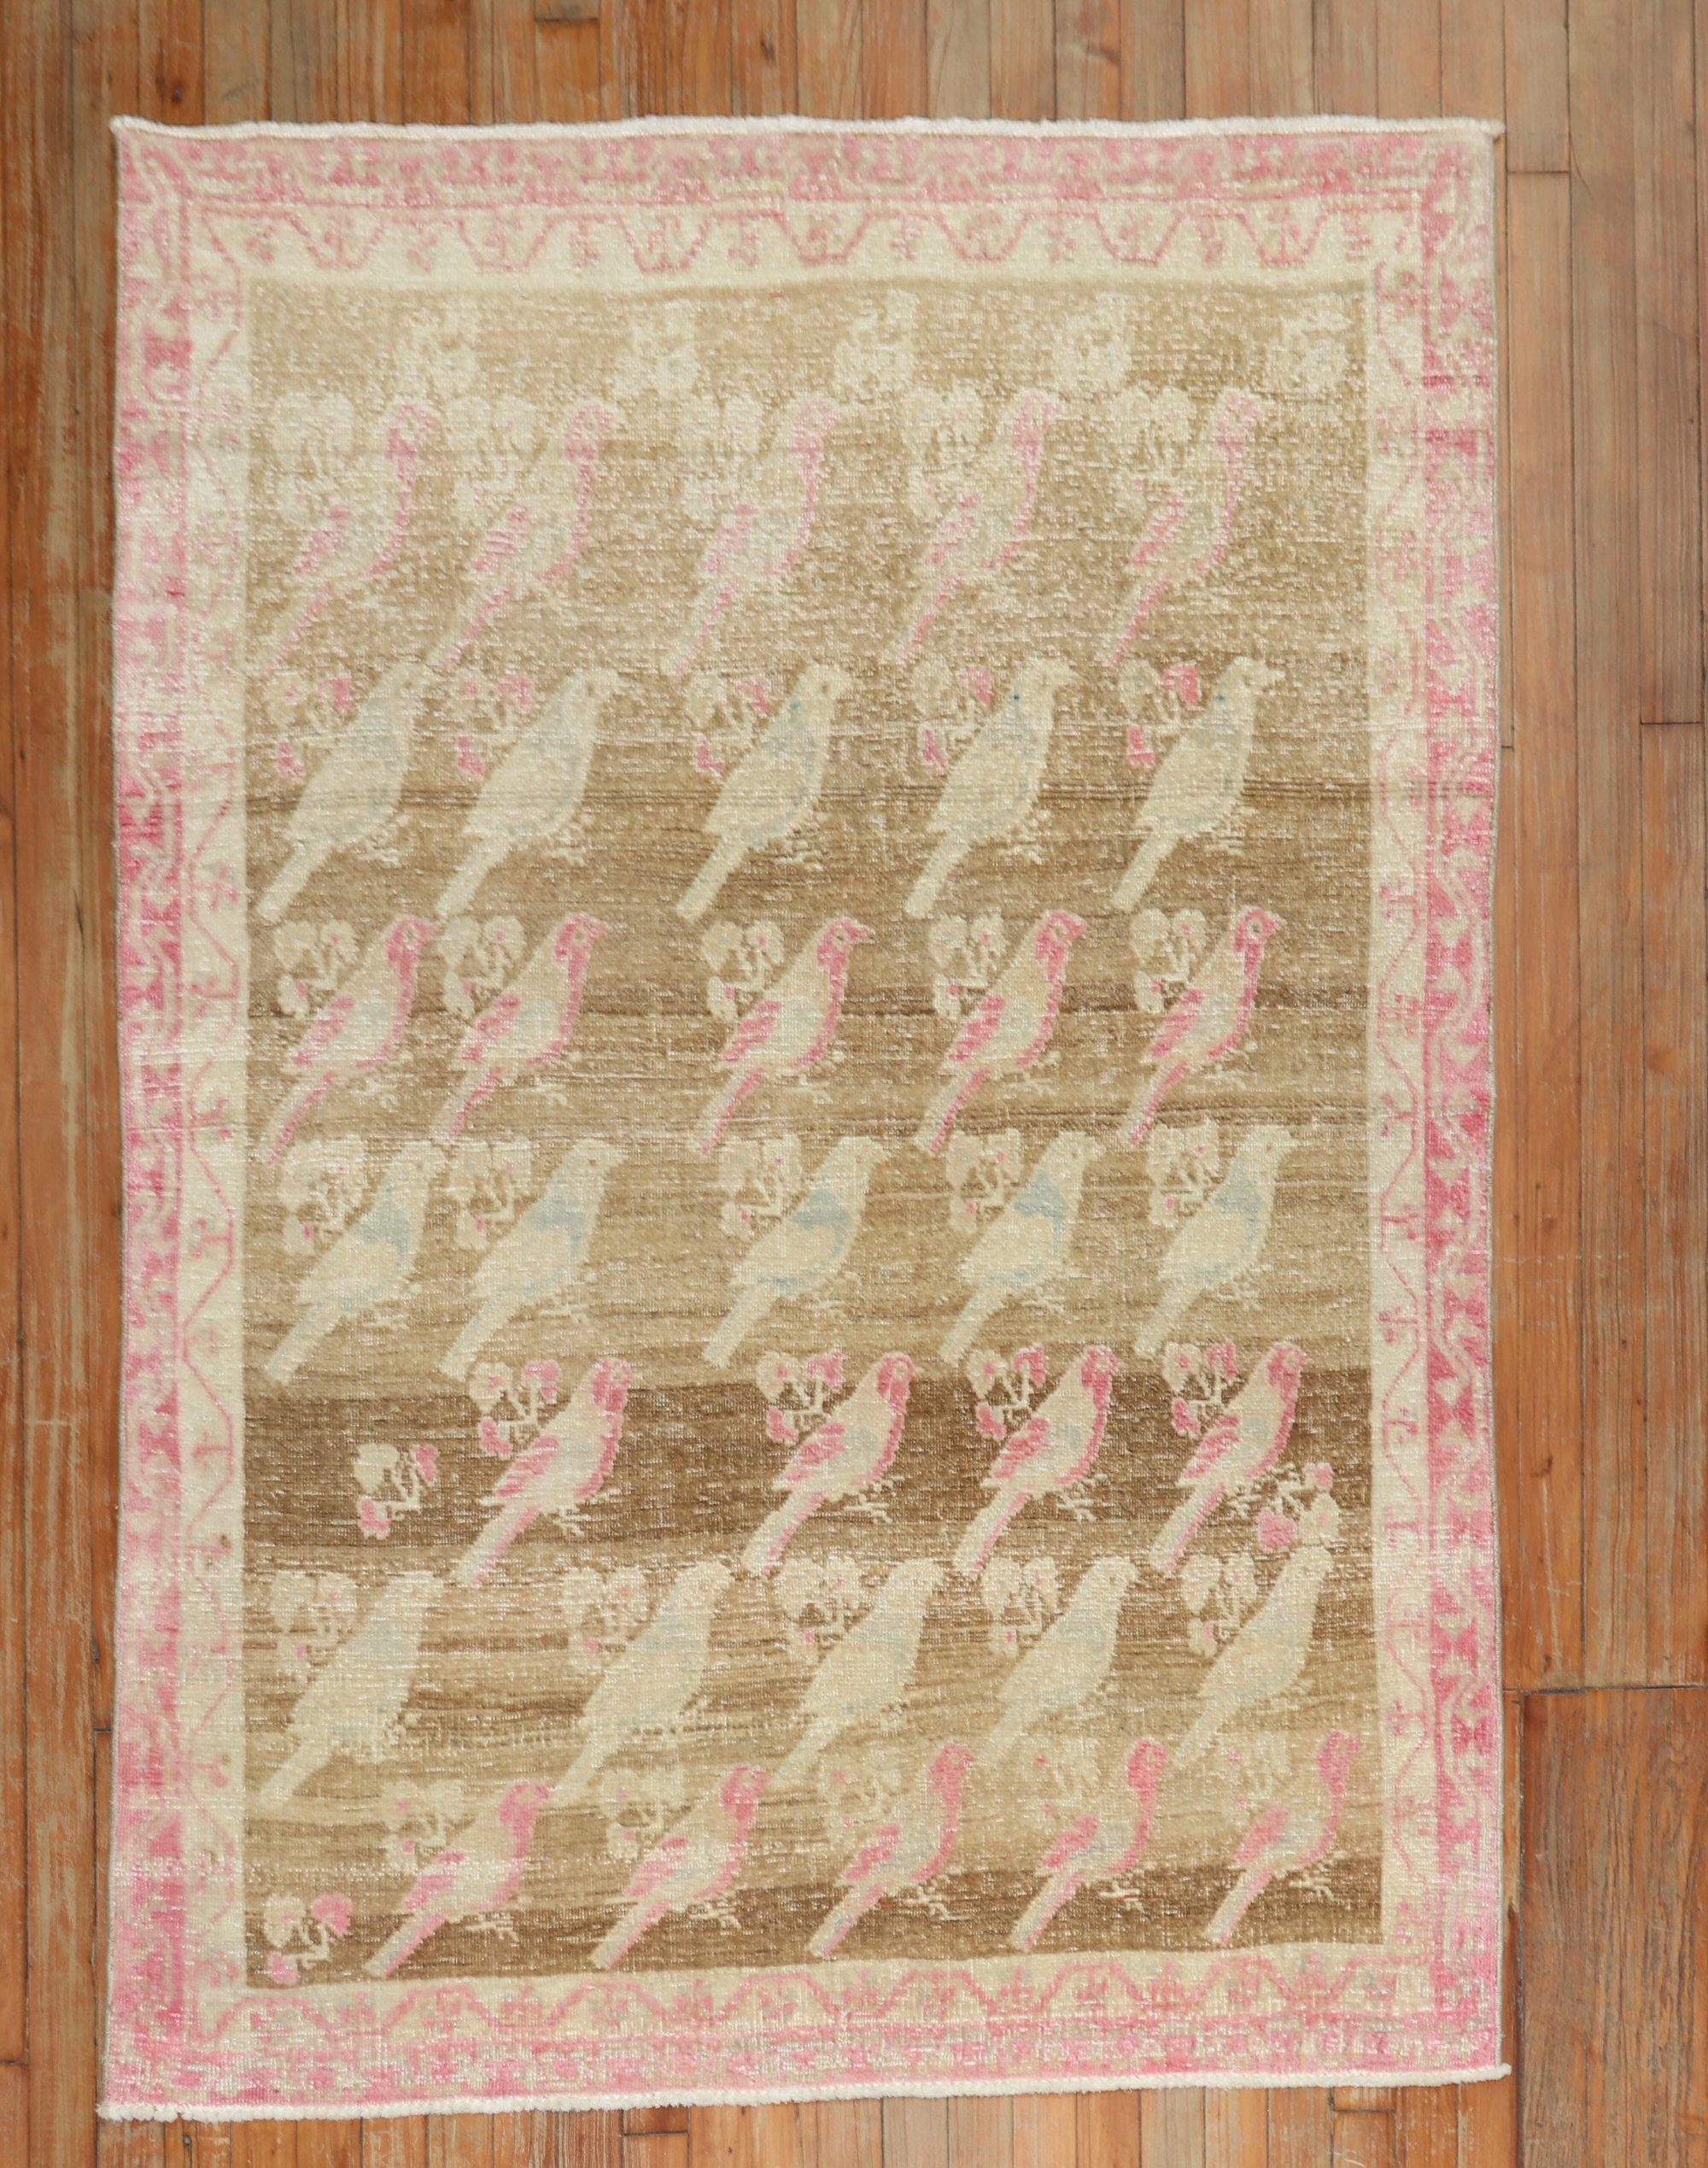 Ein abgenutzter persischer Gabbeh-Teppich aus der Mitte des 20. Jahrhunderts mit einem Allover-Taubenmuster auf einem braunen Feld, primäre Akzente in Rosa

Maße: 4' x 5'11''.